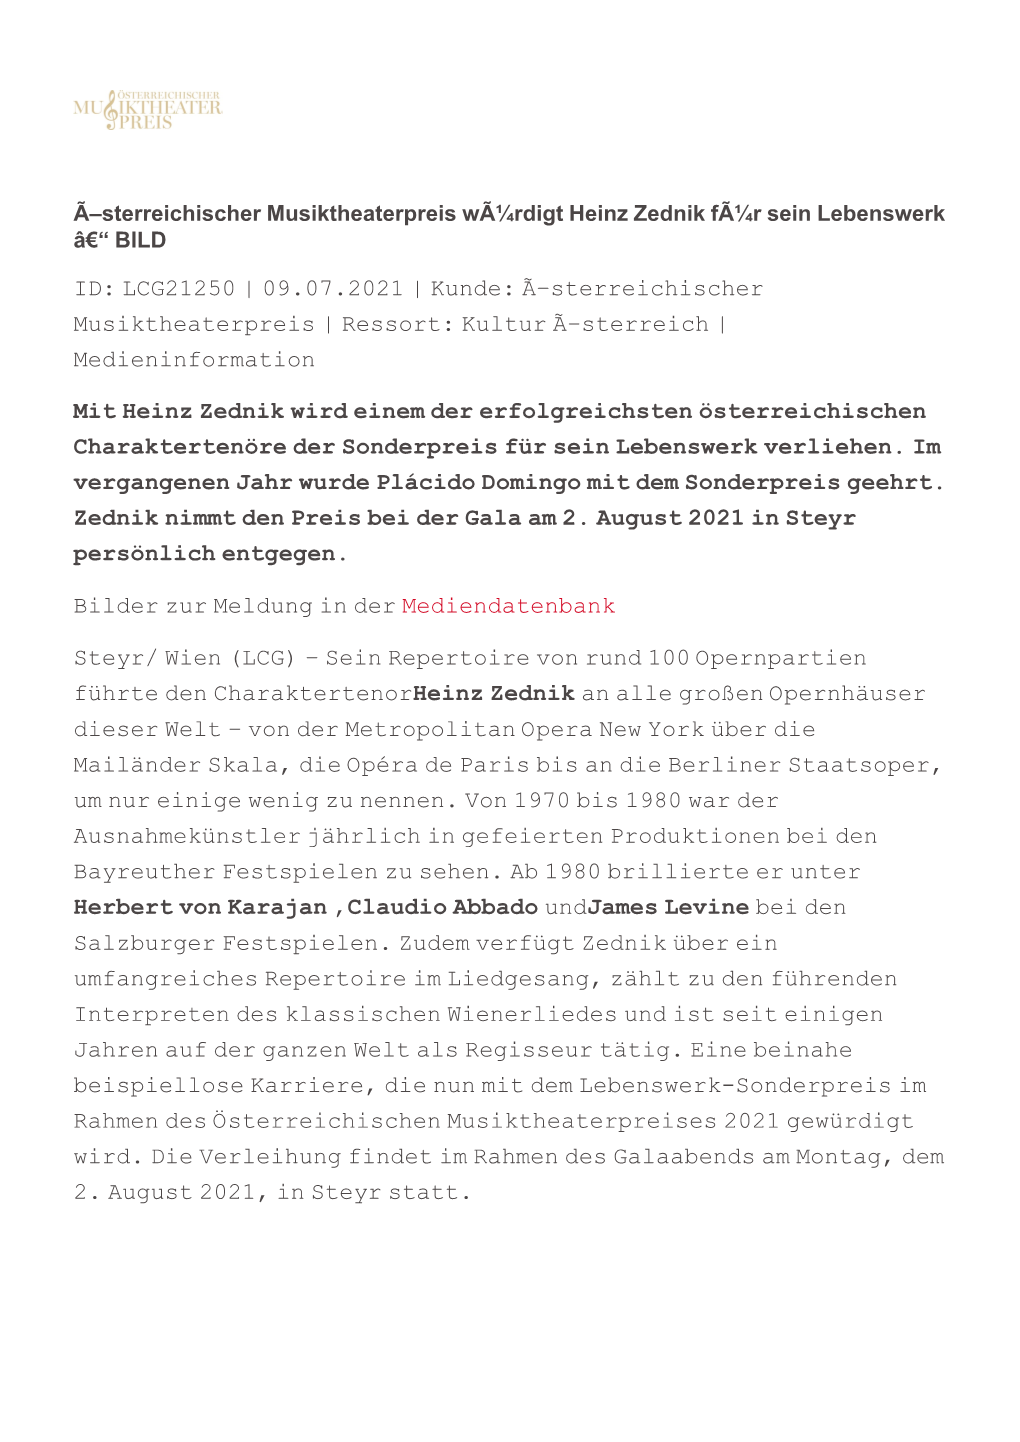 ID: LCG21250 | 09.07.2021 | Kunde: Ã–Sterreichischer Musiktheaterpreis | Ressort: Kultur Ã–Sterreich | Medieninformation